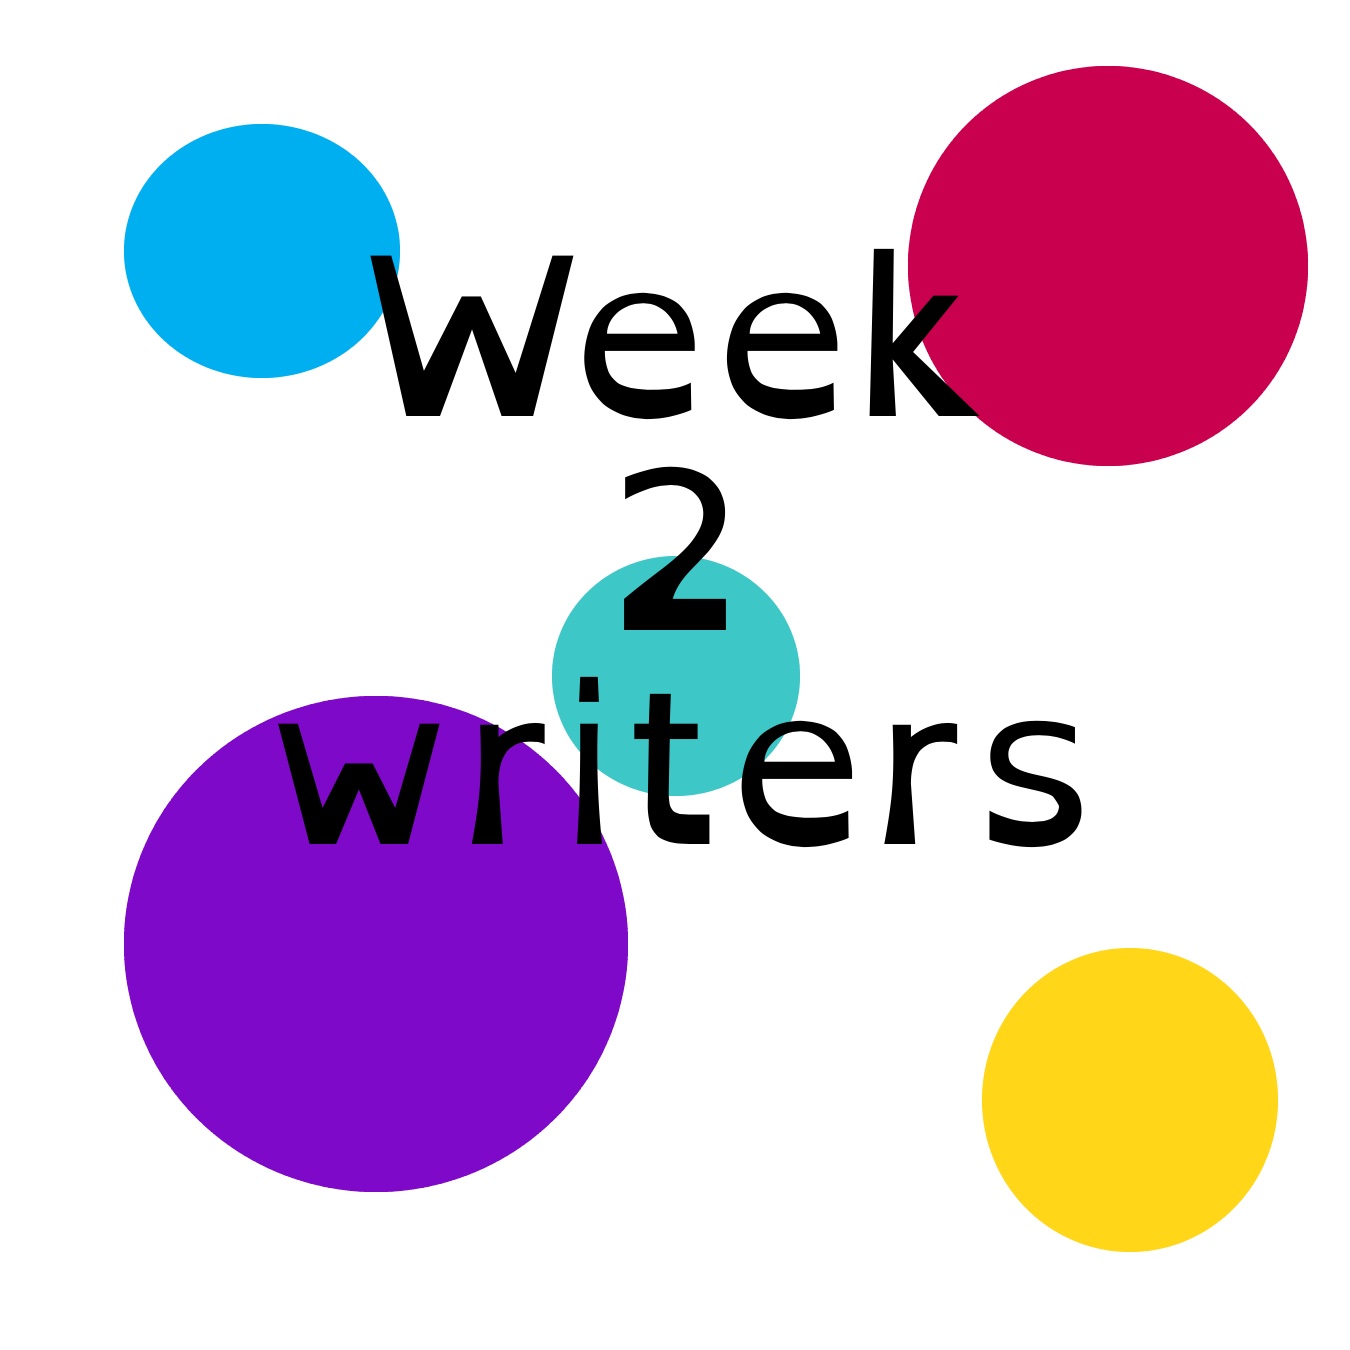 Writers week 2